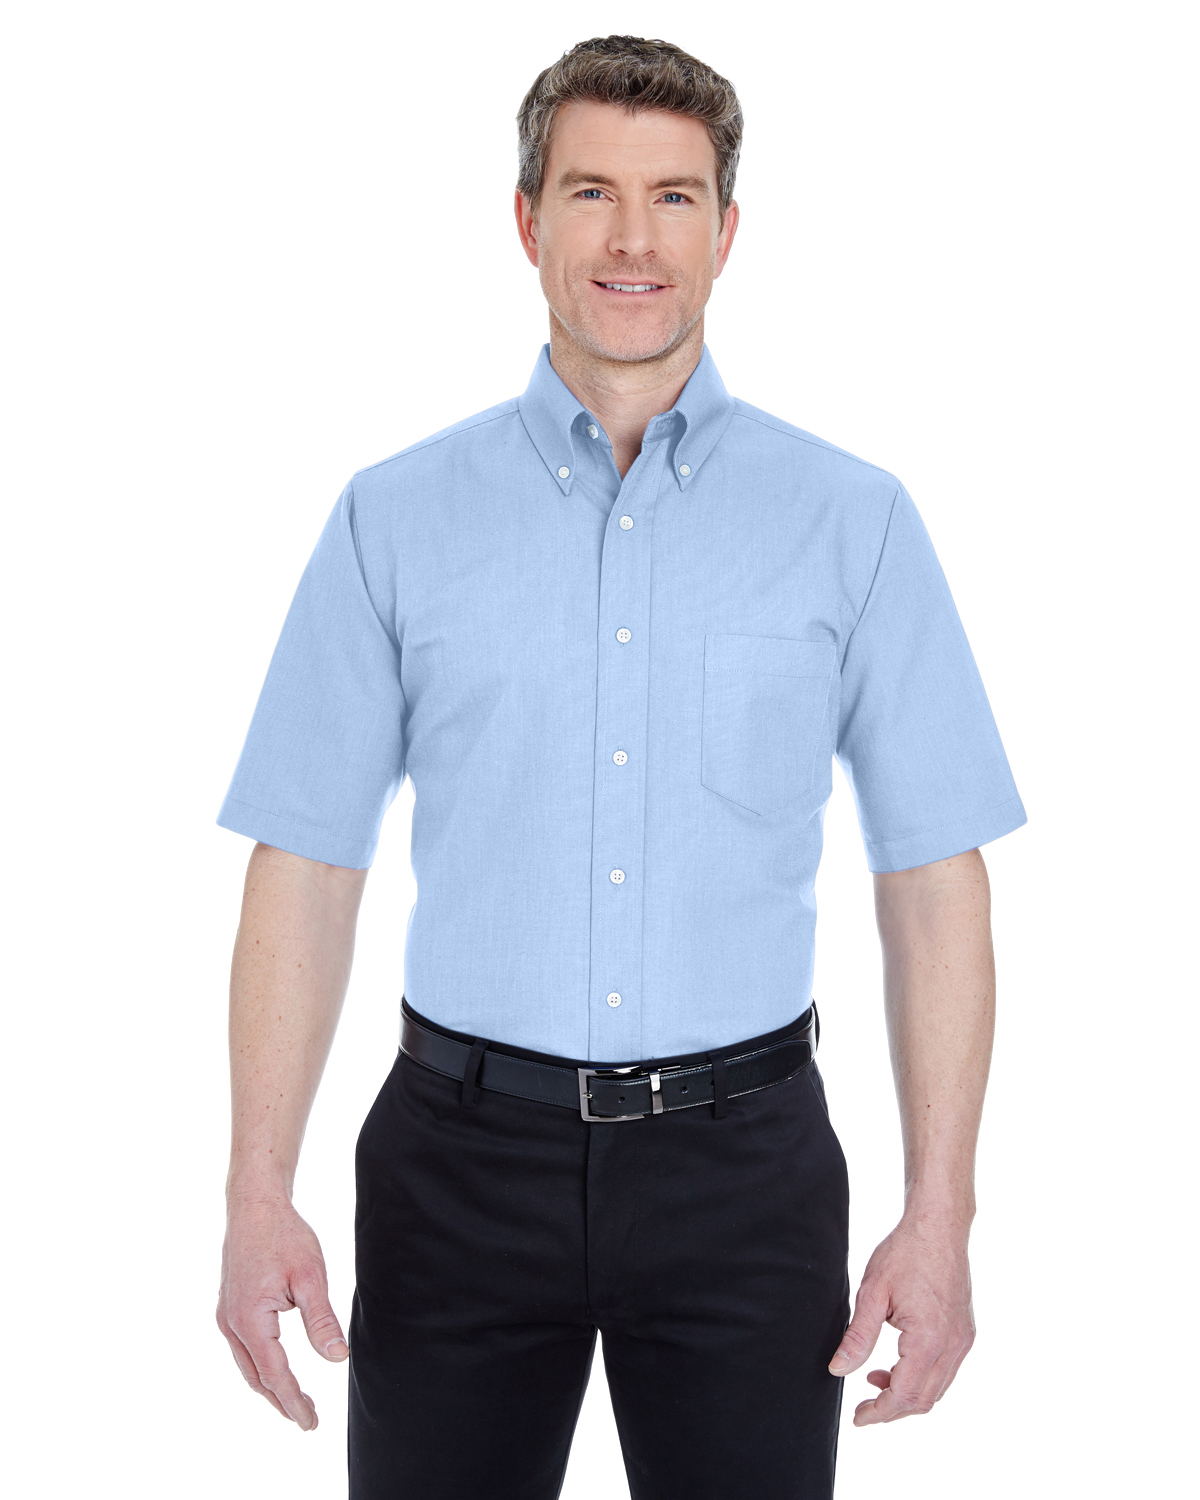 men's tall short sleeve dress shirts